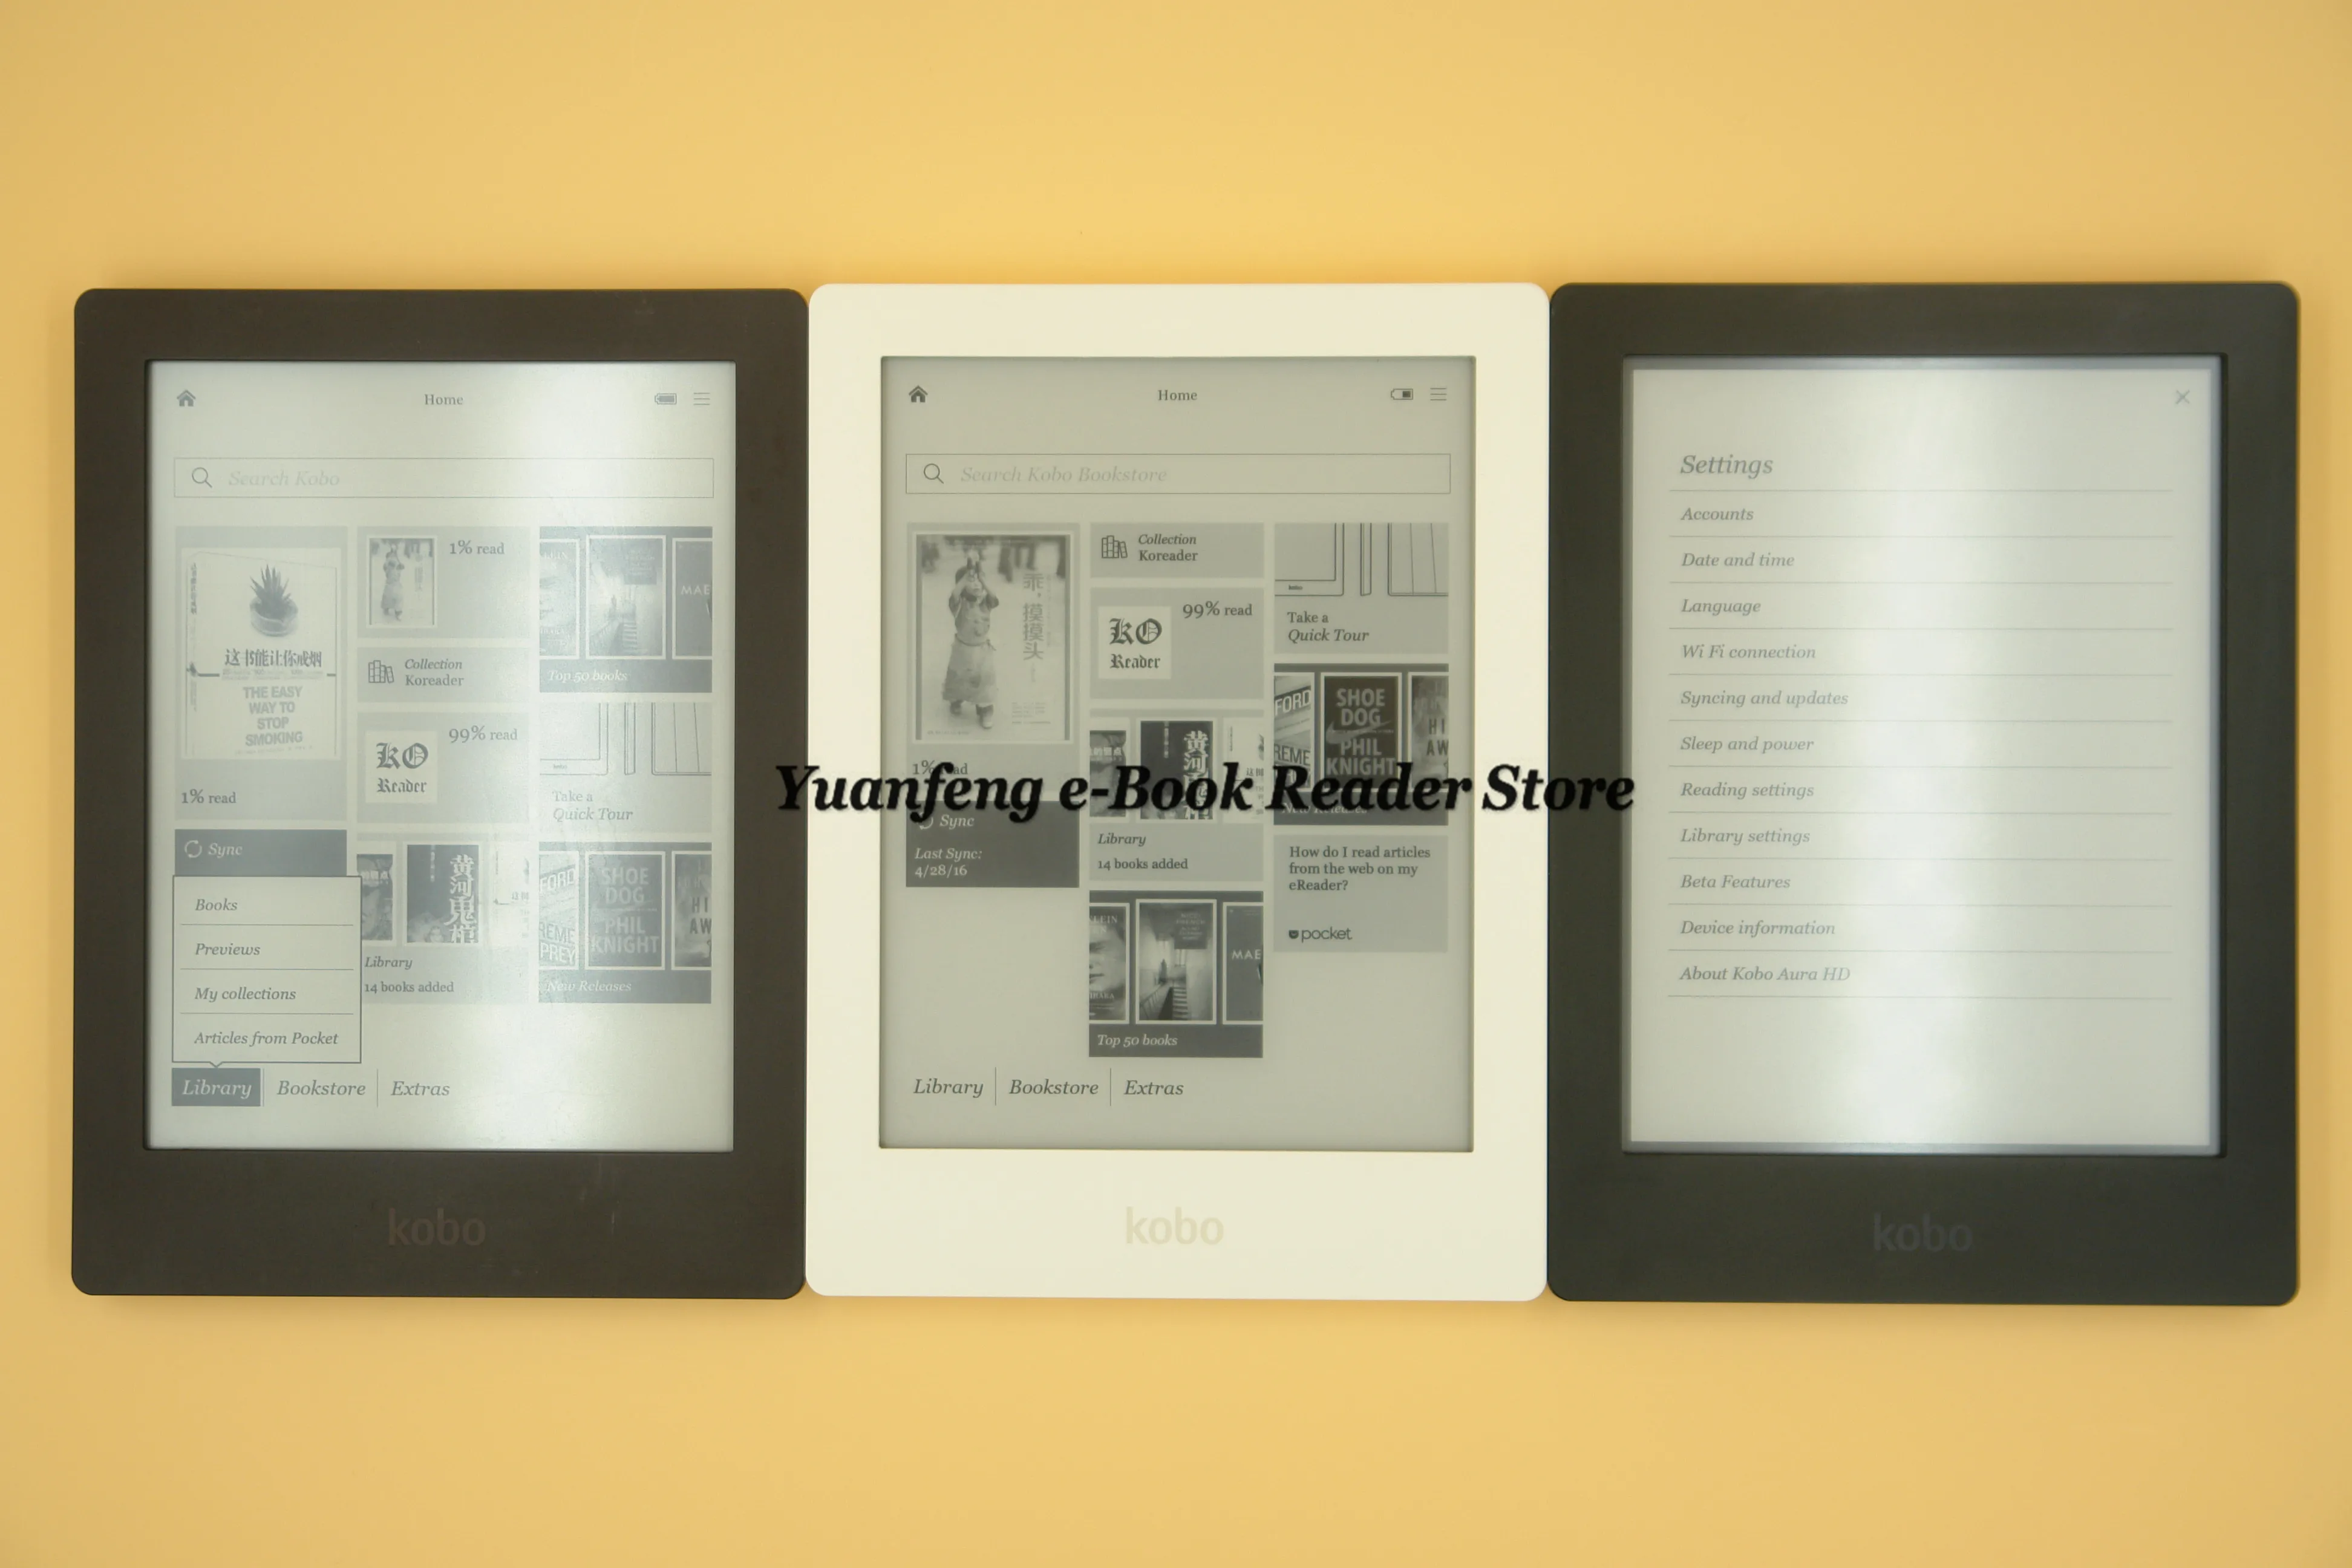 Электронная книга Kobo Aura HD читалка 6,8 дюймов 1440x1080 сенсорный экран электронная книга читатель e-ink передний свет электронные книги ридер